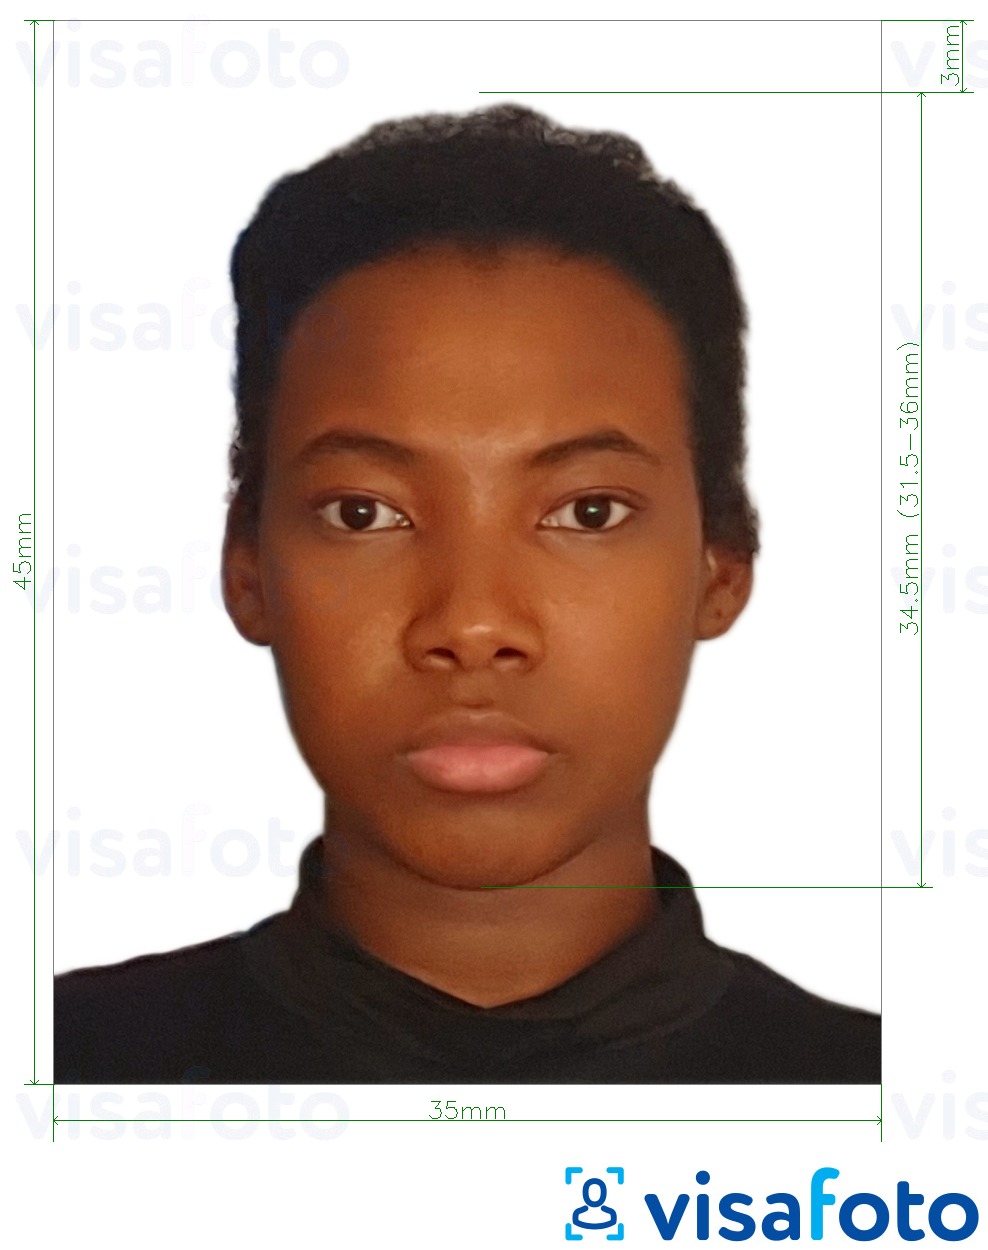 Voorbeeld van foto voor Burkina Faso paspoort 4.5x3.5 cm (45x35 mm) met exacte maatspecificatie